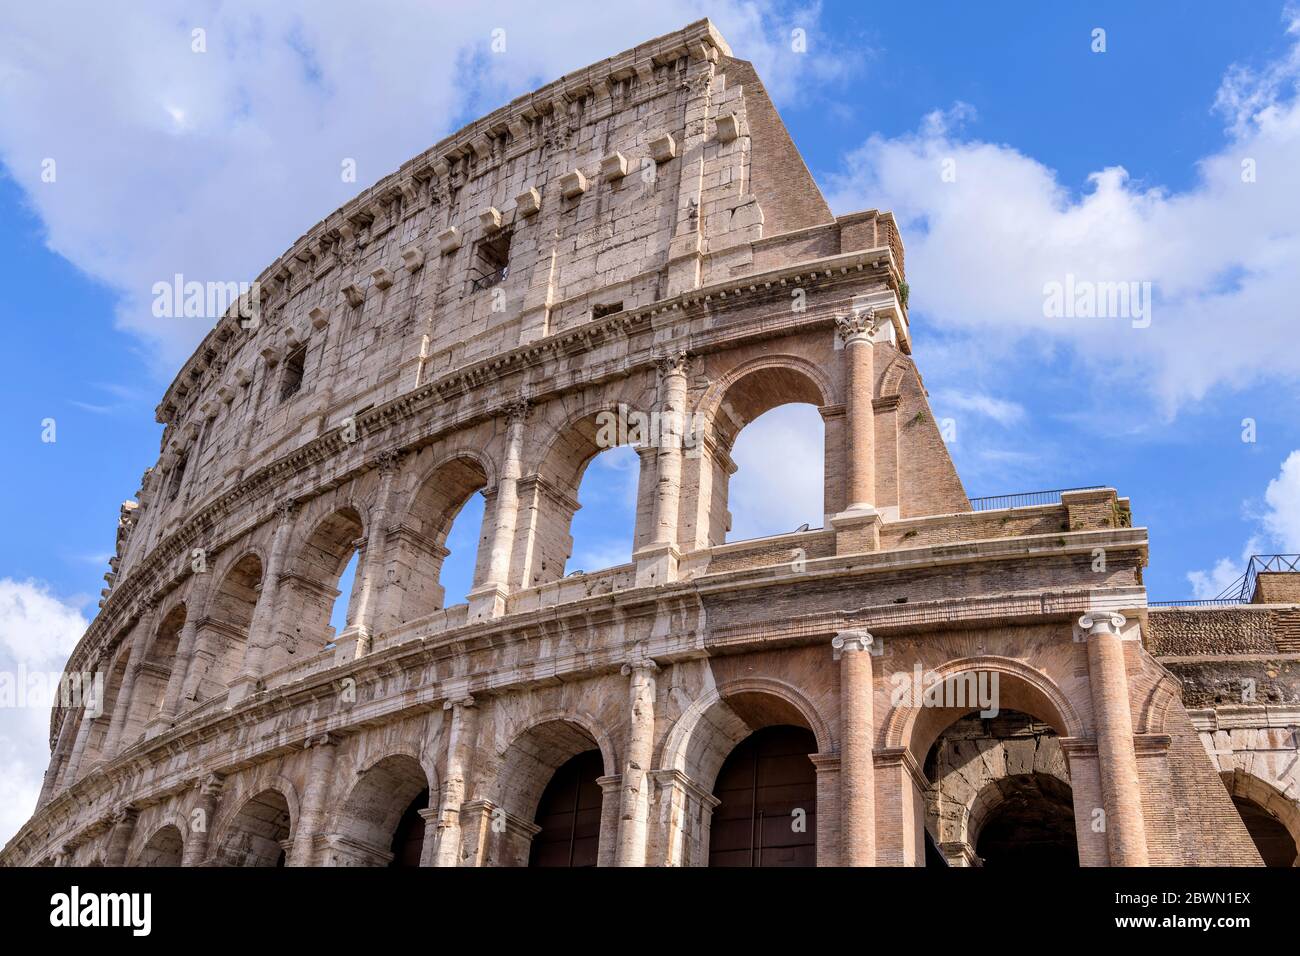 Mur du Colisée - vue rapprochée à angle bas de la partie supérieure du mur extérieur ouest du Colisée, contre les nuages blancs et le ciel bleu. Rome, Italie. Banque D'Images